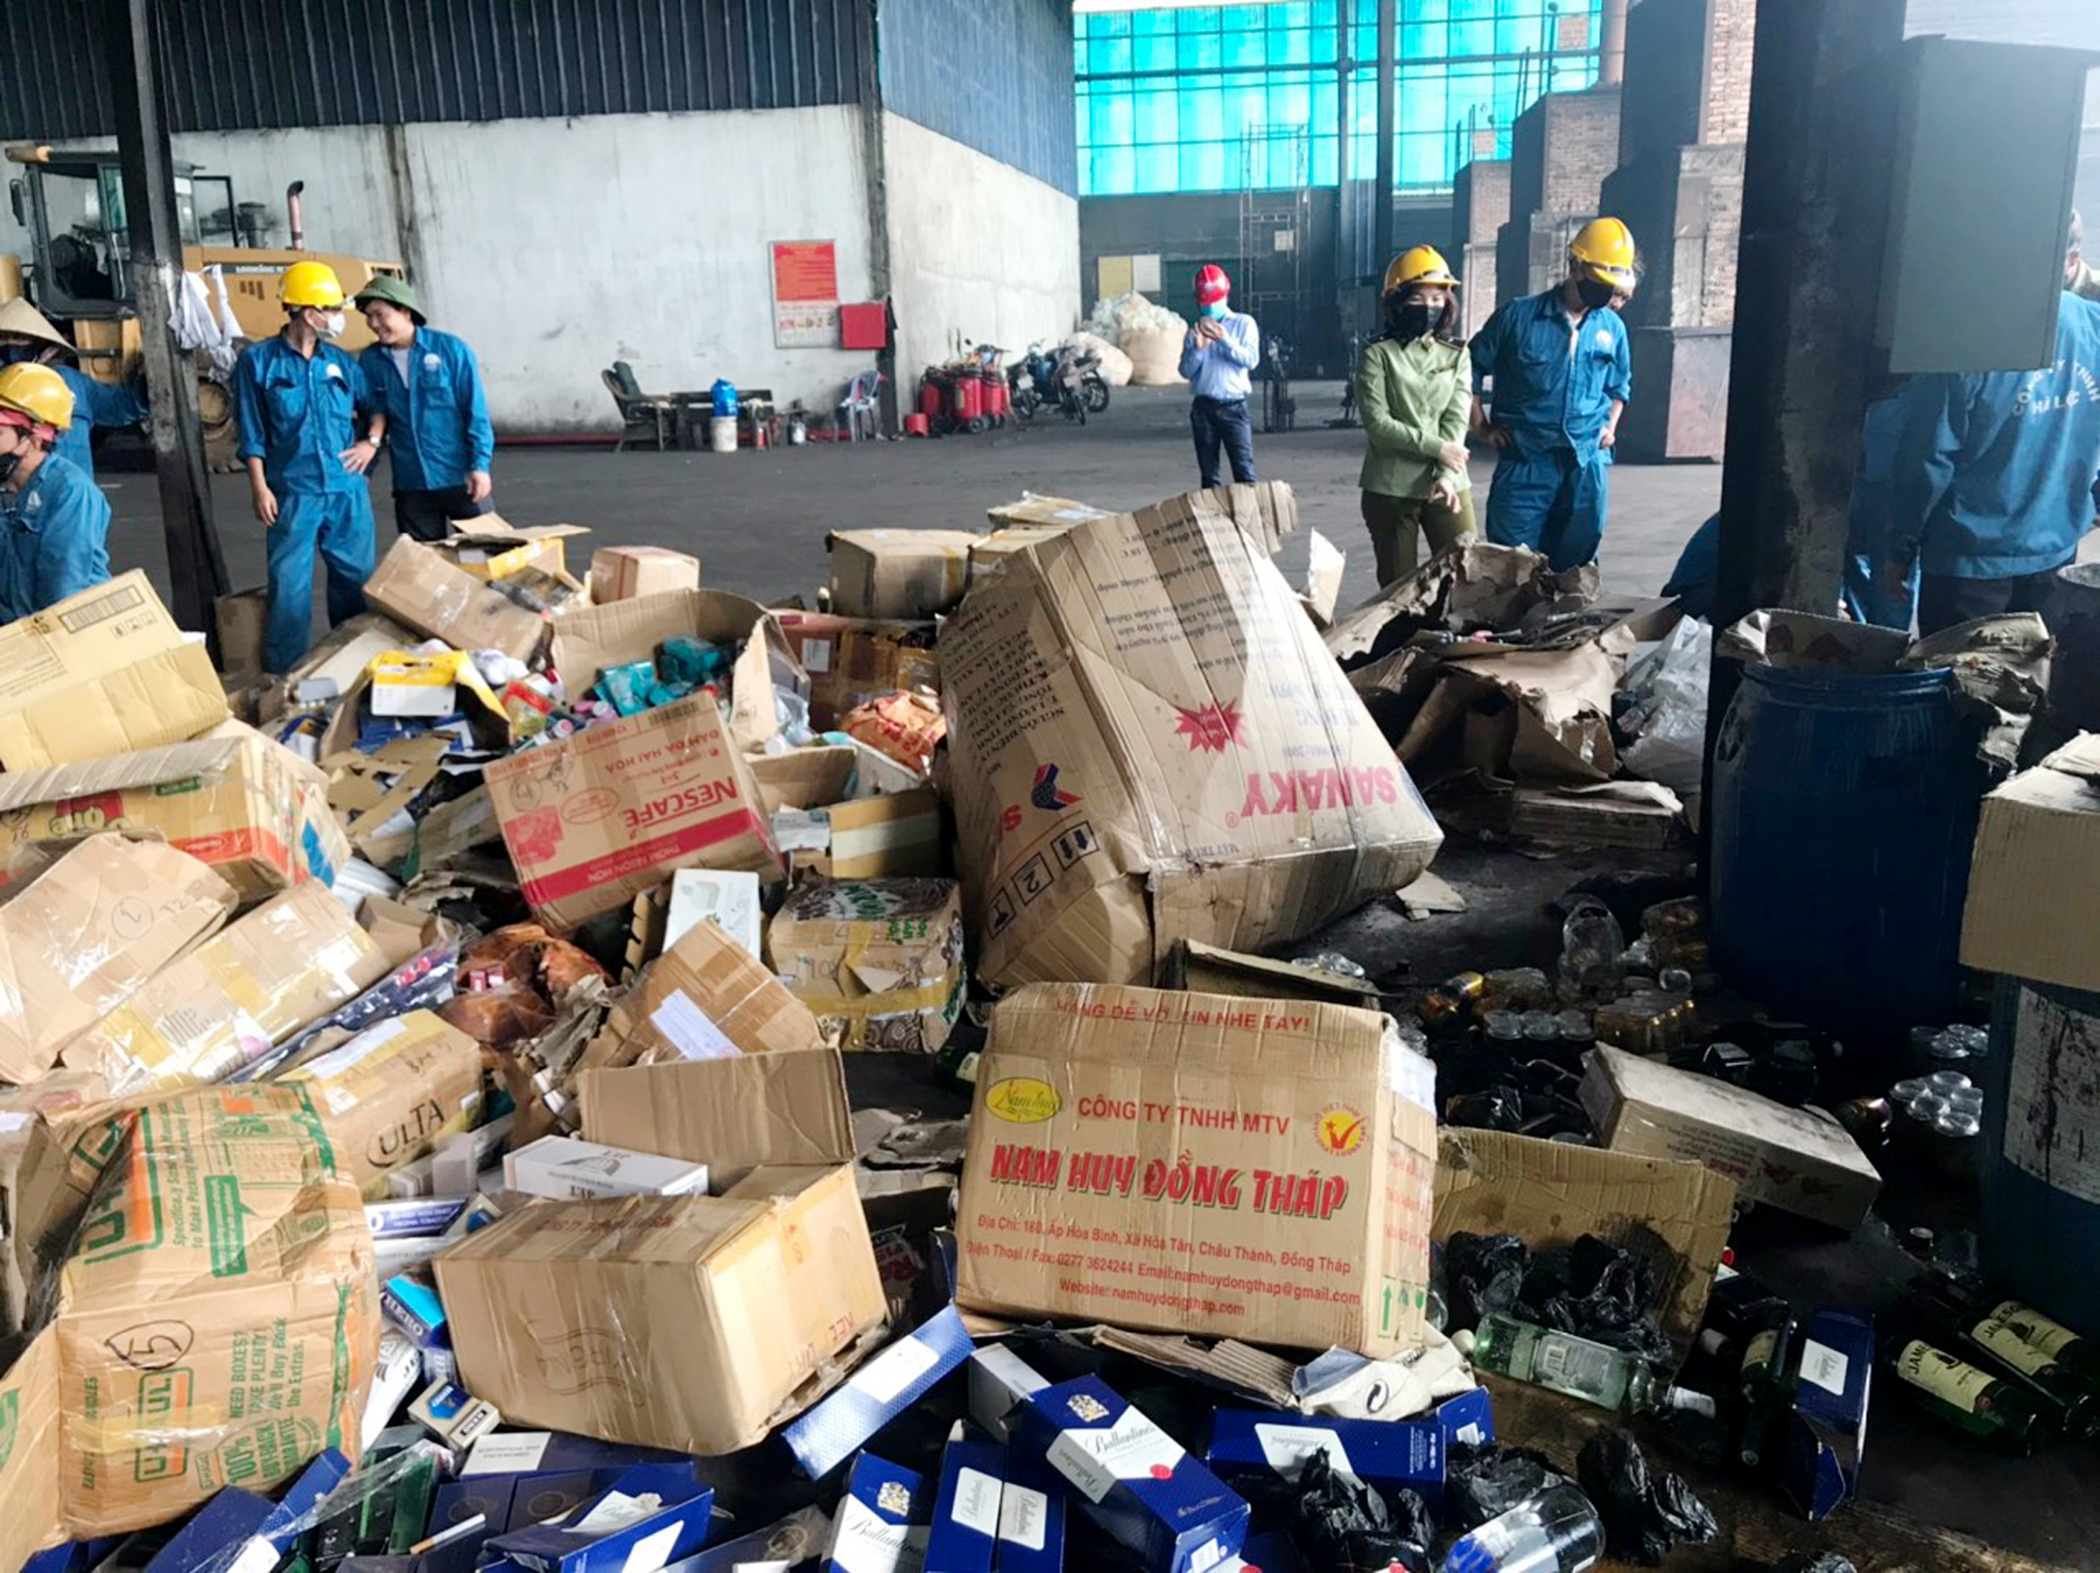 Hội đồng tiêu hủy tang vật vi phạm hành chính Cục QLTT tỉnh tiến hành tiêu hủy 12.584 sản phẩm hàng hóa các loại không rõ nguồn gốc, xuất xứ, Đội QLTT đã phát hiện bắt giữ và tịch thu. Ảnh: Cục QLTT